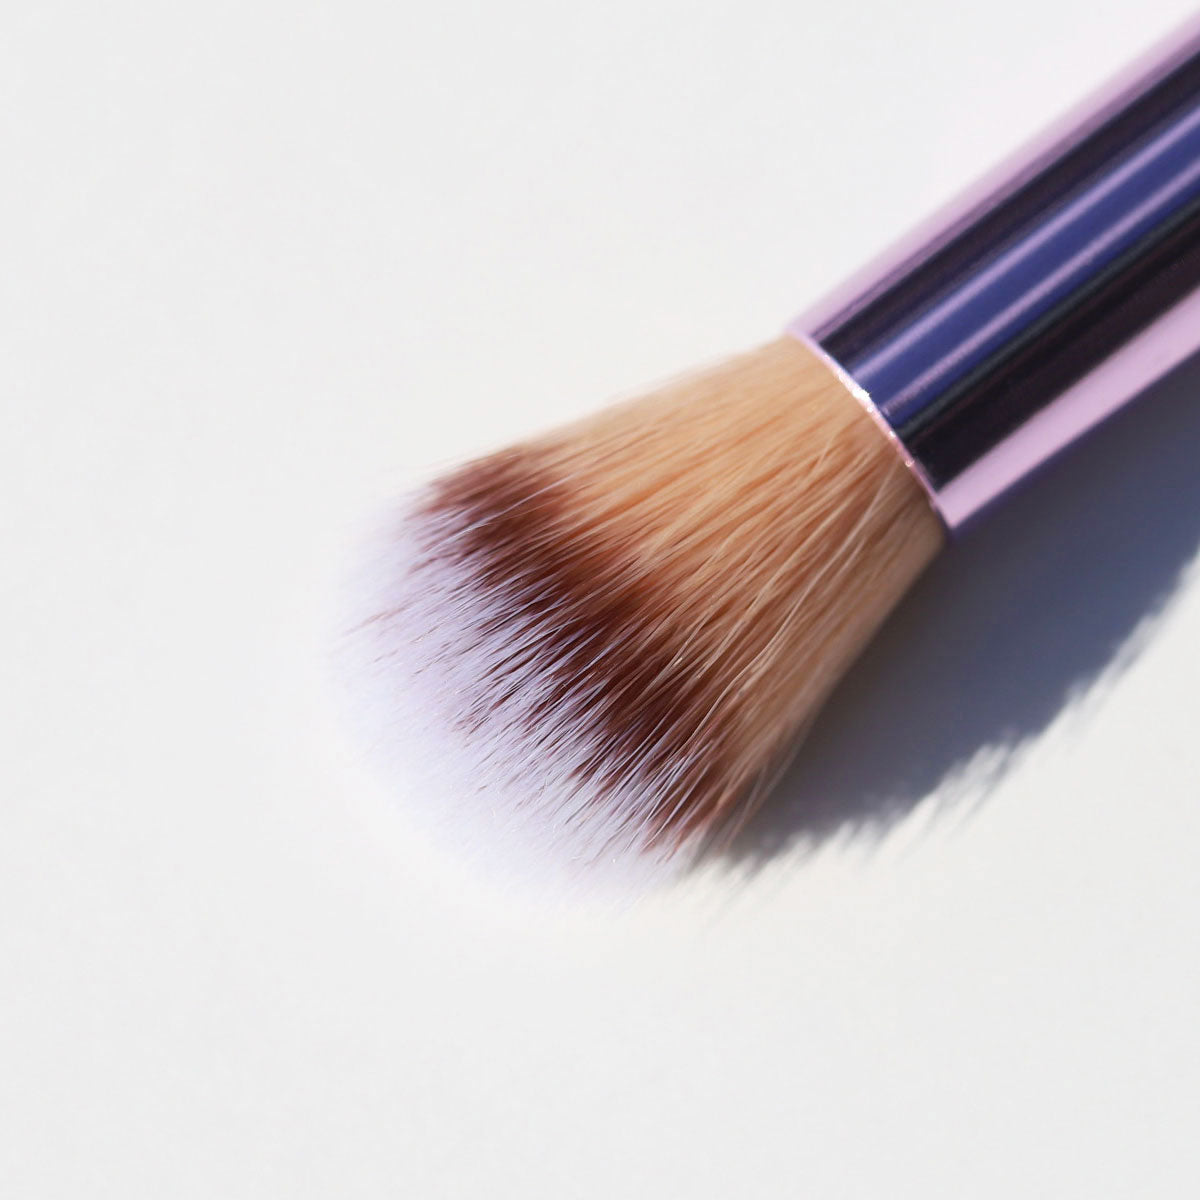 purple eyeshadow brush for blending - 808 blender brush - half caked makeup